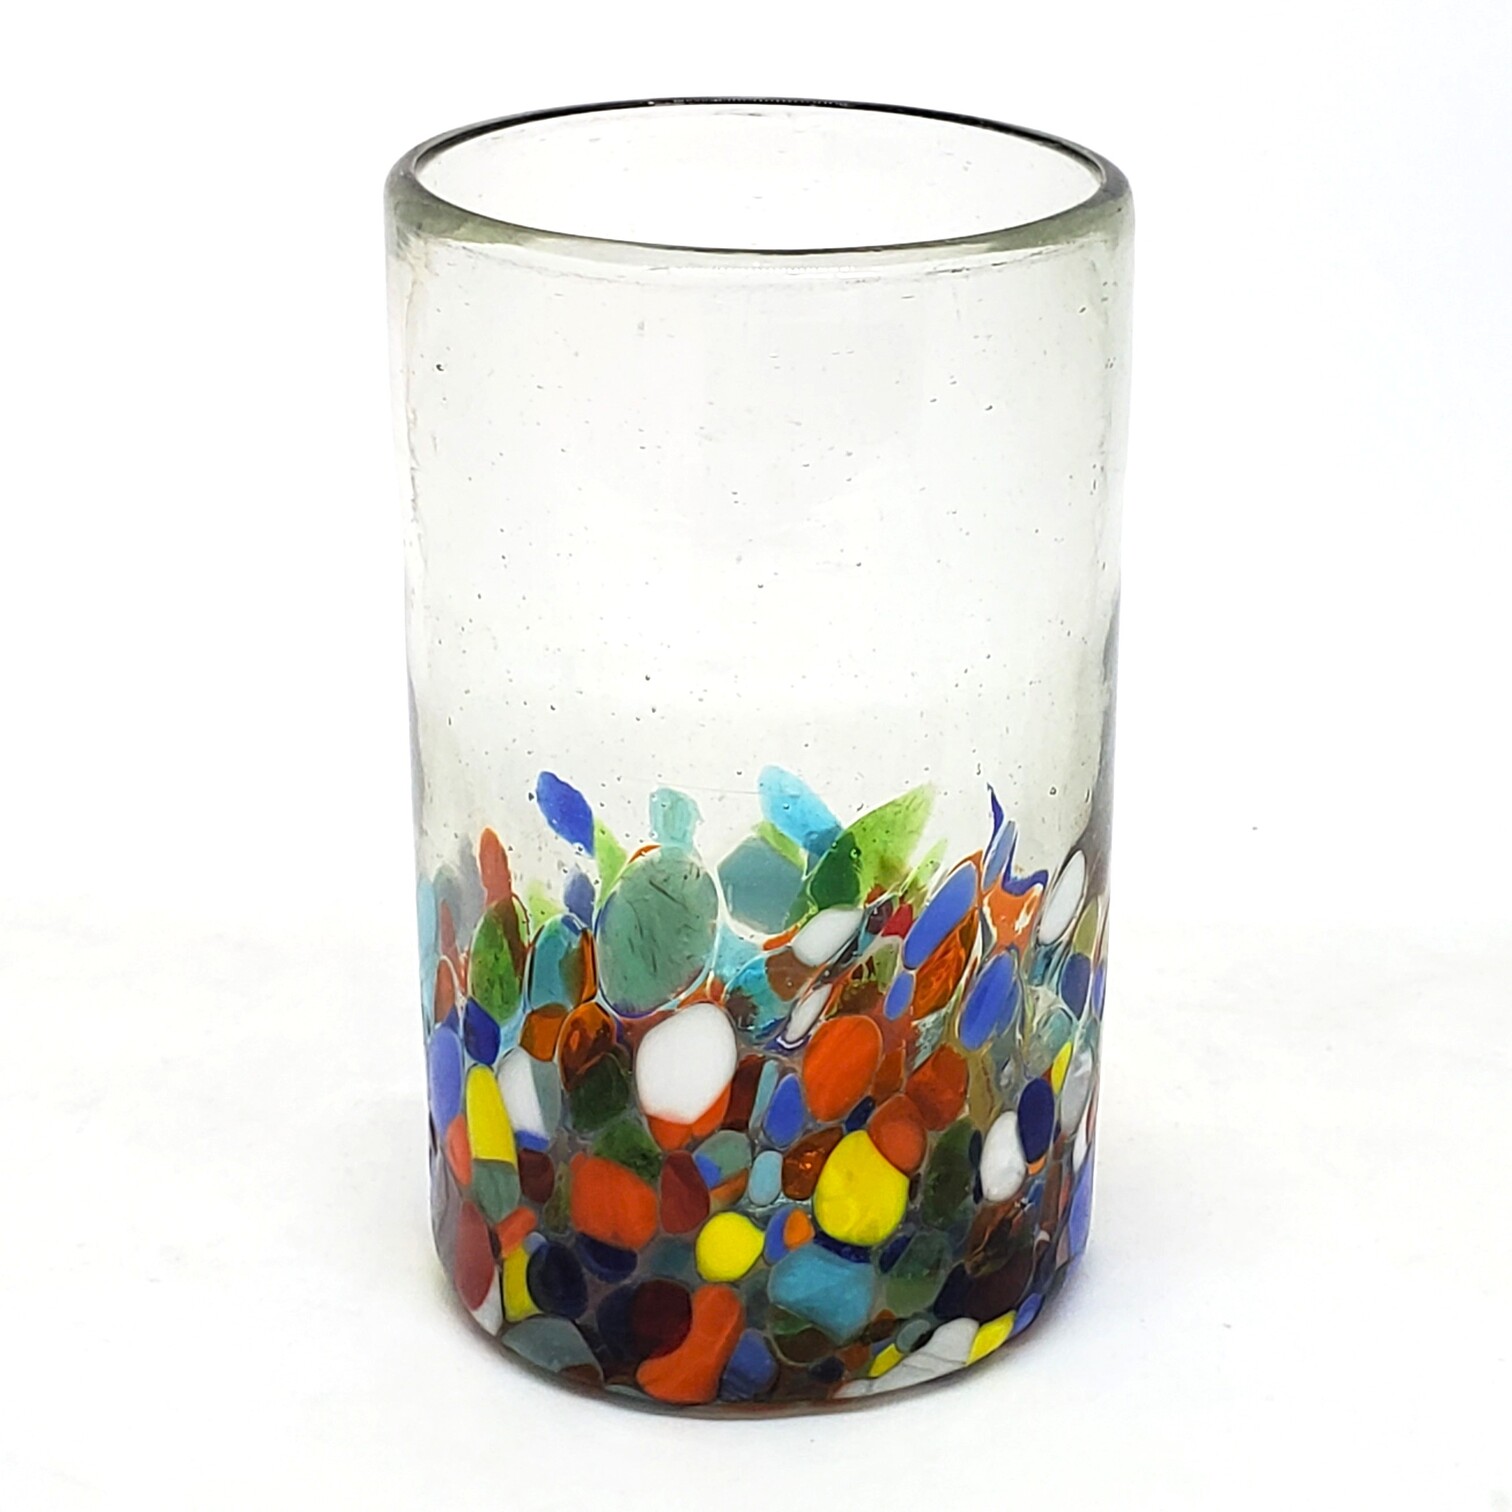 VIDRIO SOPLADO / Juego de 6 vasos grandes 'Cristal & Confeti' / Deje entrar a la primavera en su casa con éste colorido juego de vasos. El decorado con vidrio multicolor los hace resaltar en cualquier lugar.